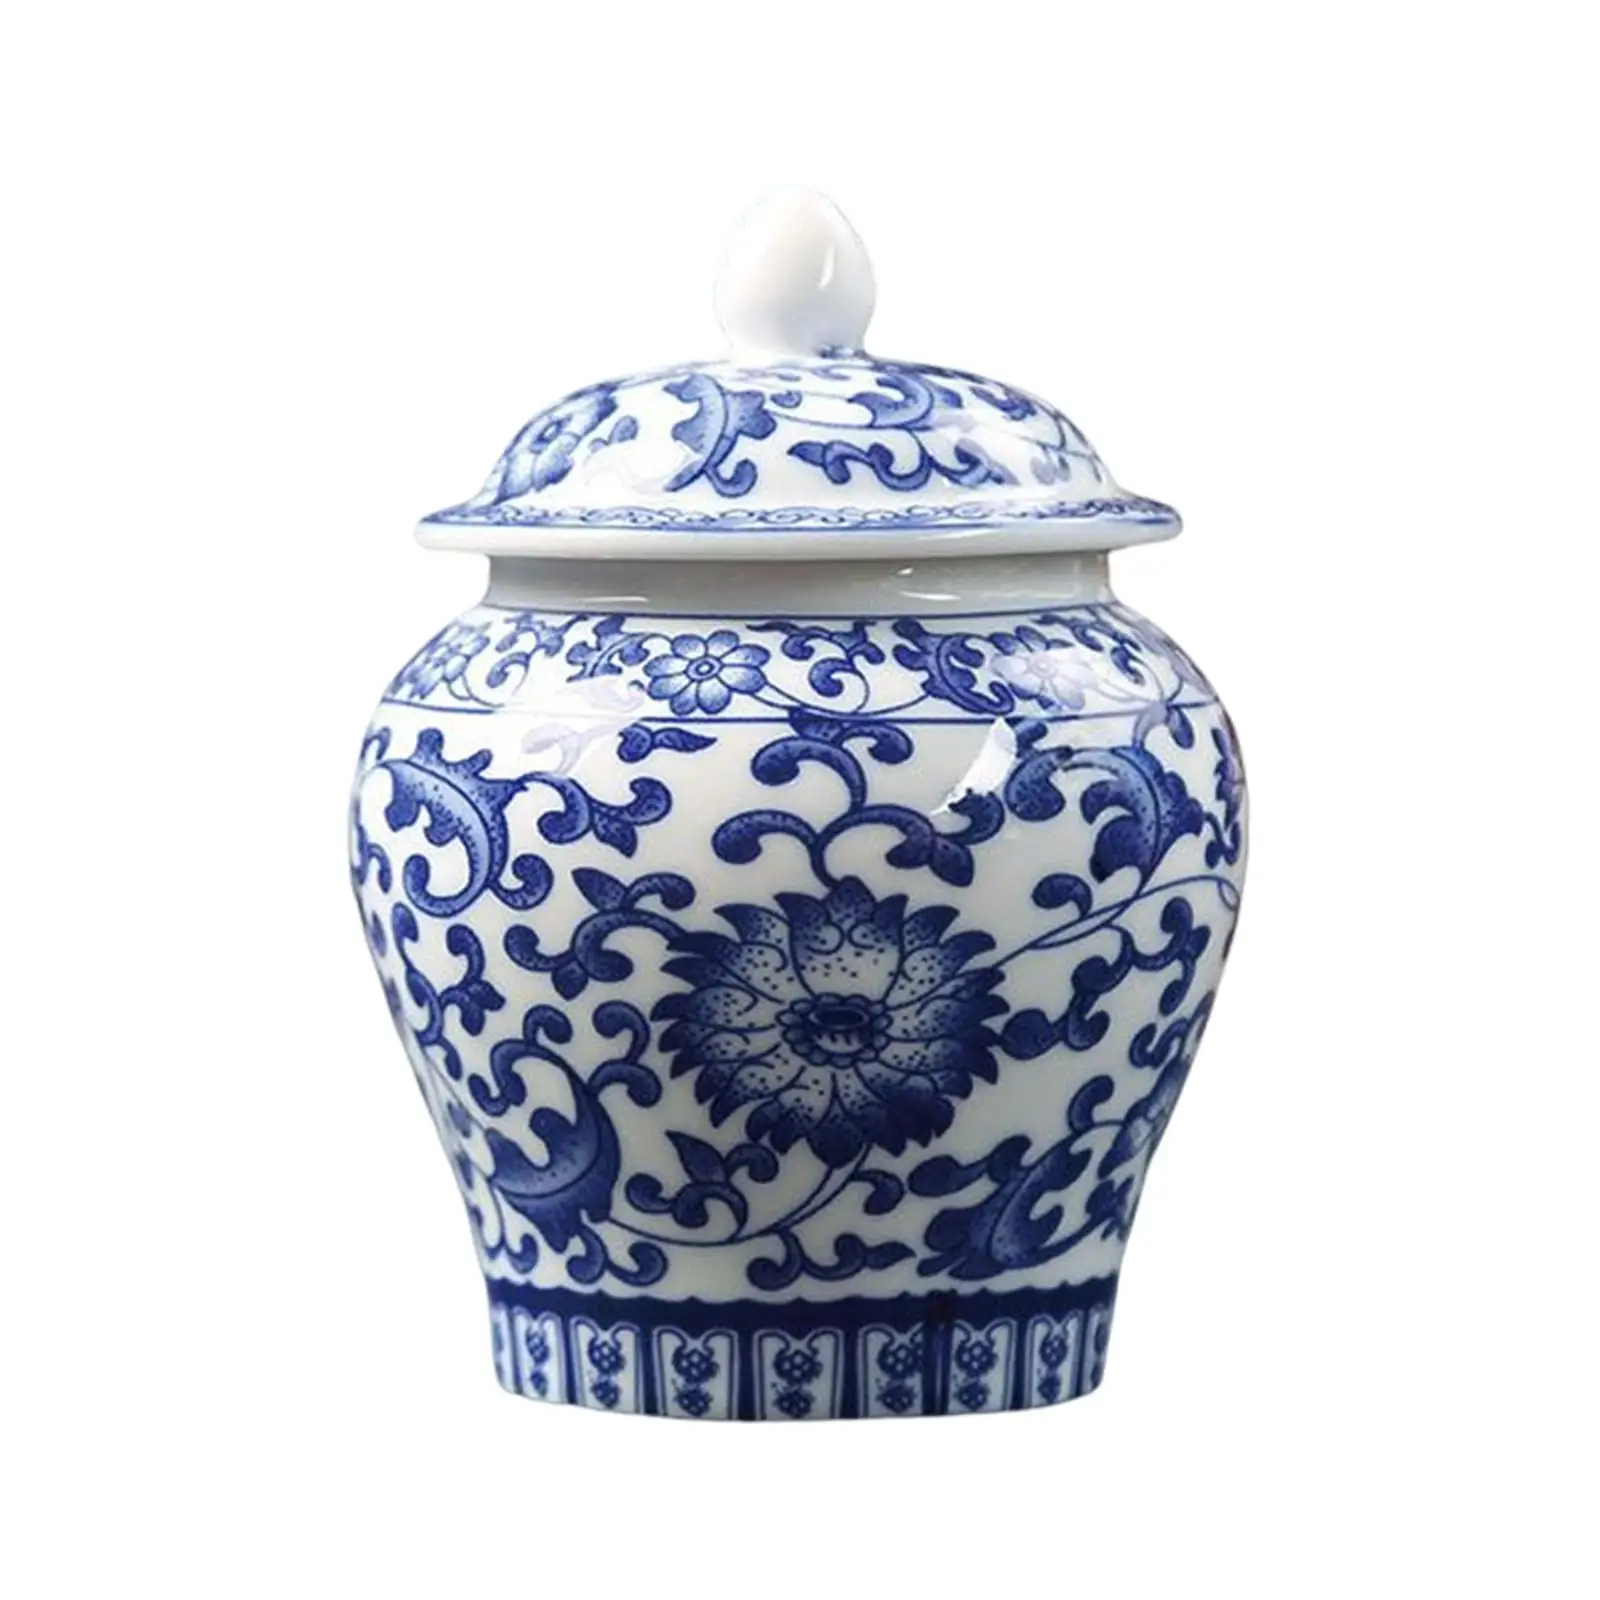 Blue and White Ceramic Glazed Ginger Jar Tea Storage Jar with Lid Living Room Decor